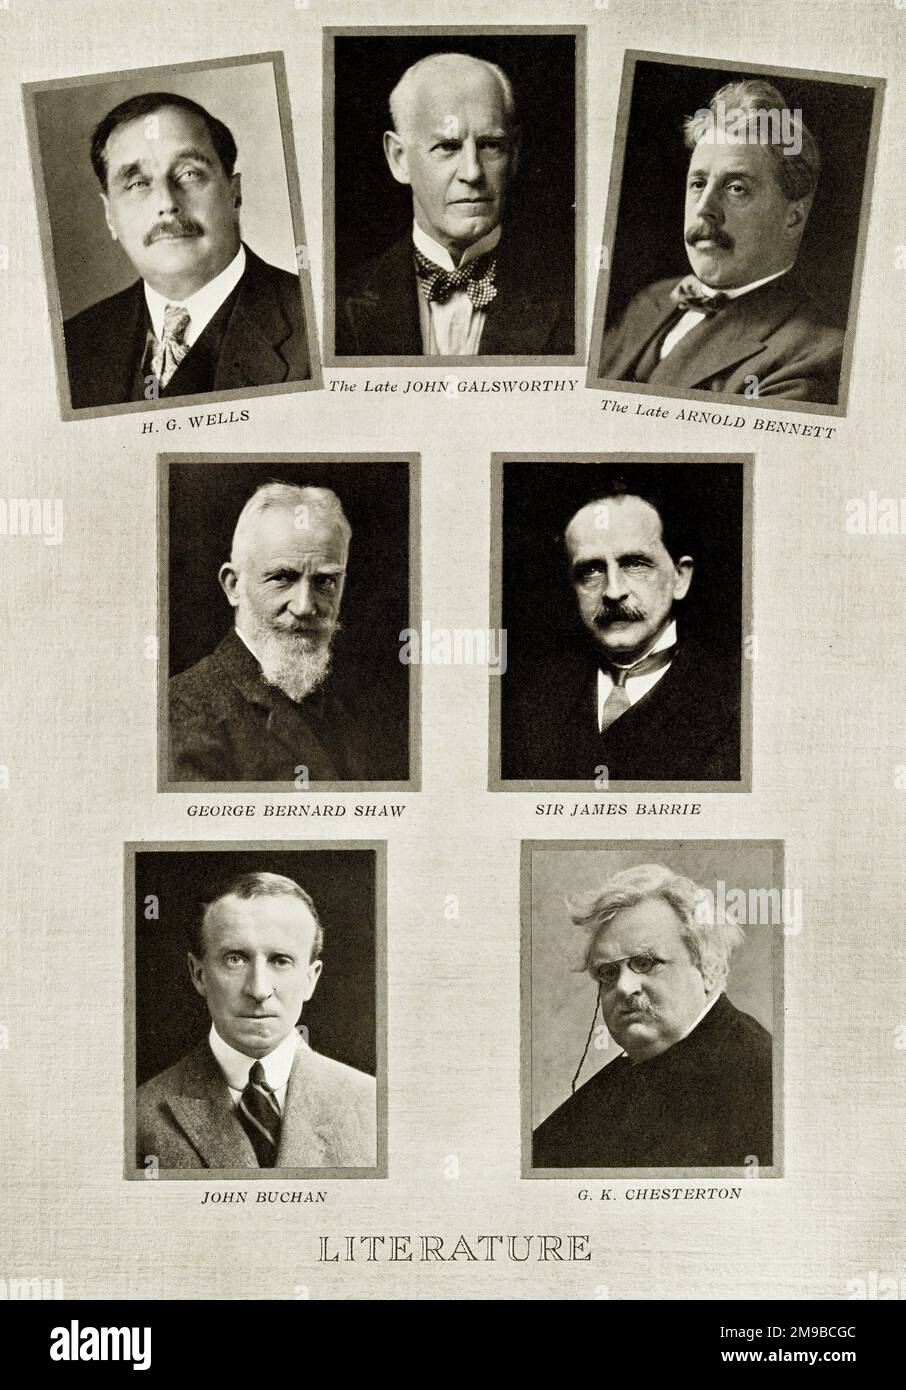 Principales autores y dramaturgos durante los primeros 25 años del reinado del rey Jorge V: Wells, Galsworthy, Bennett, Shaw, Barrie, Buchan, Chesterton. Foto de stock